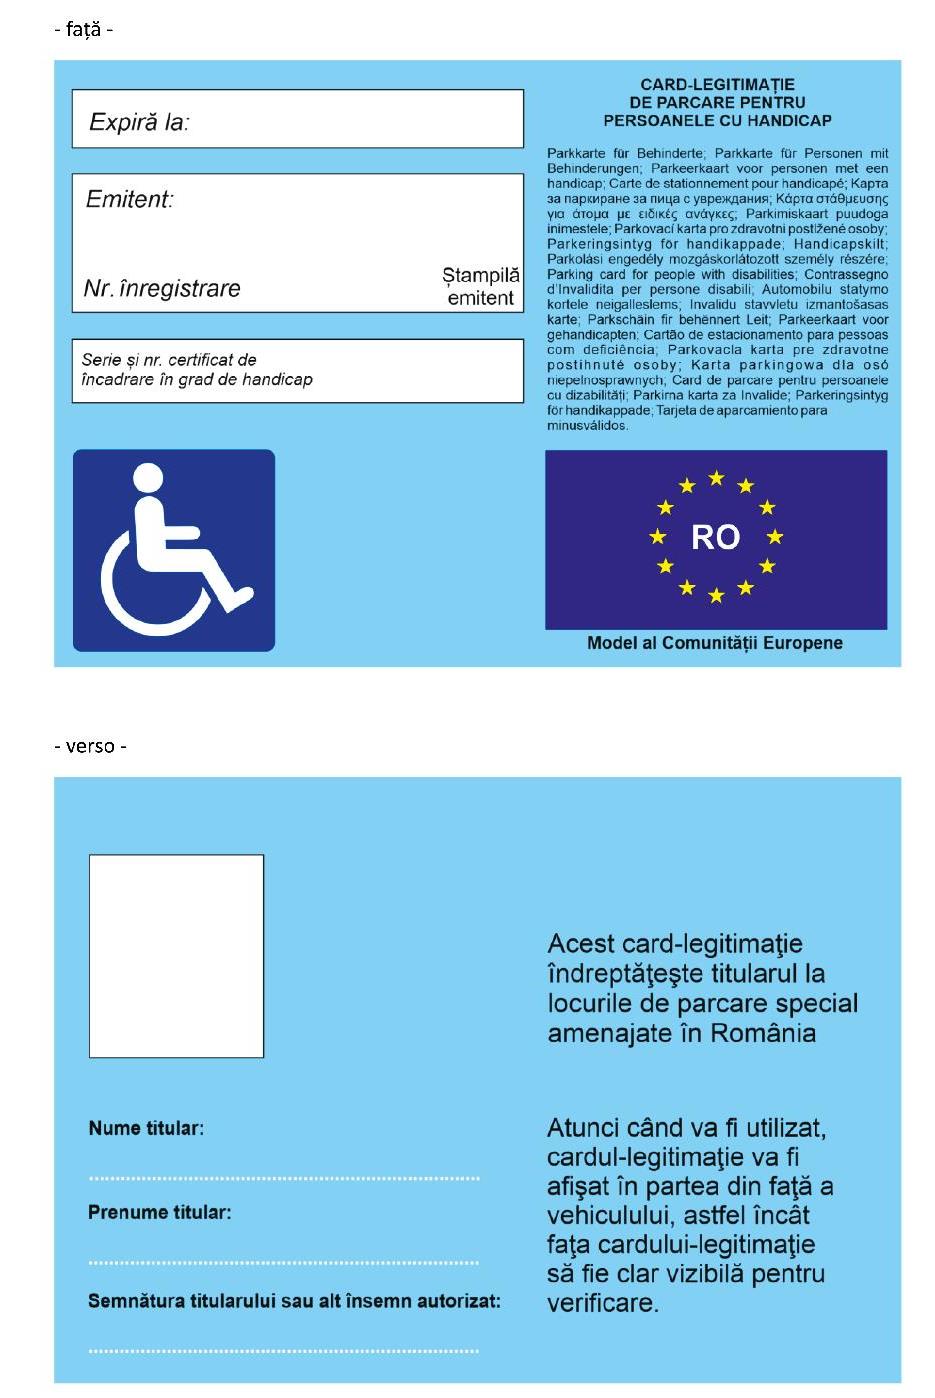 Noul format unic al cardului-legitimație de parcare pentru persoanele cu handicap